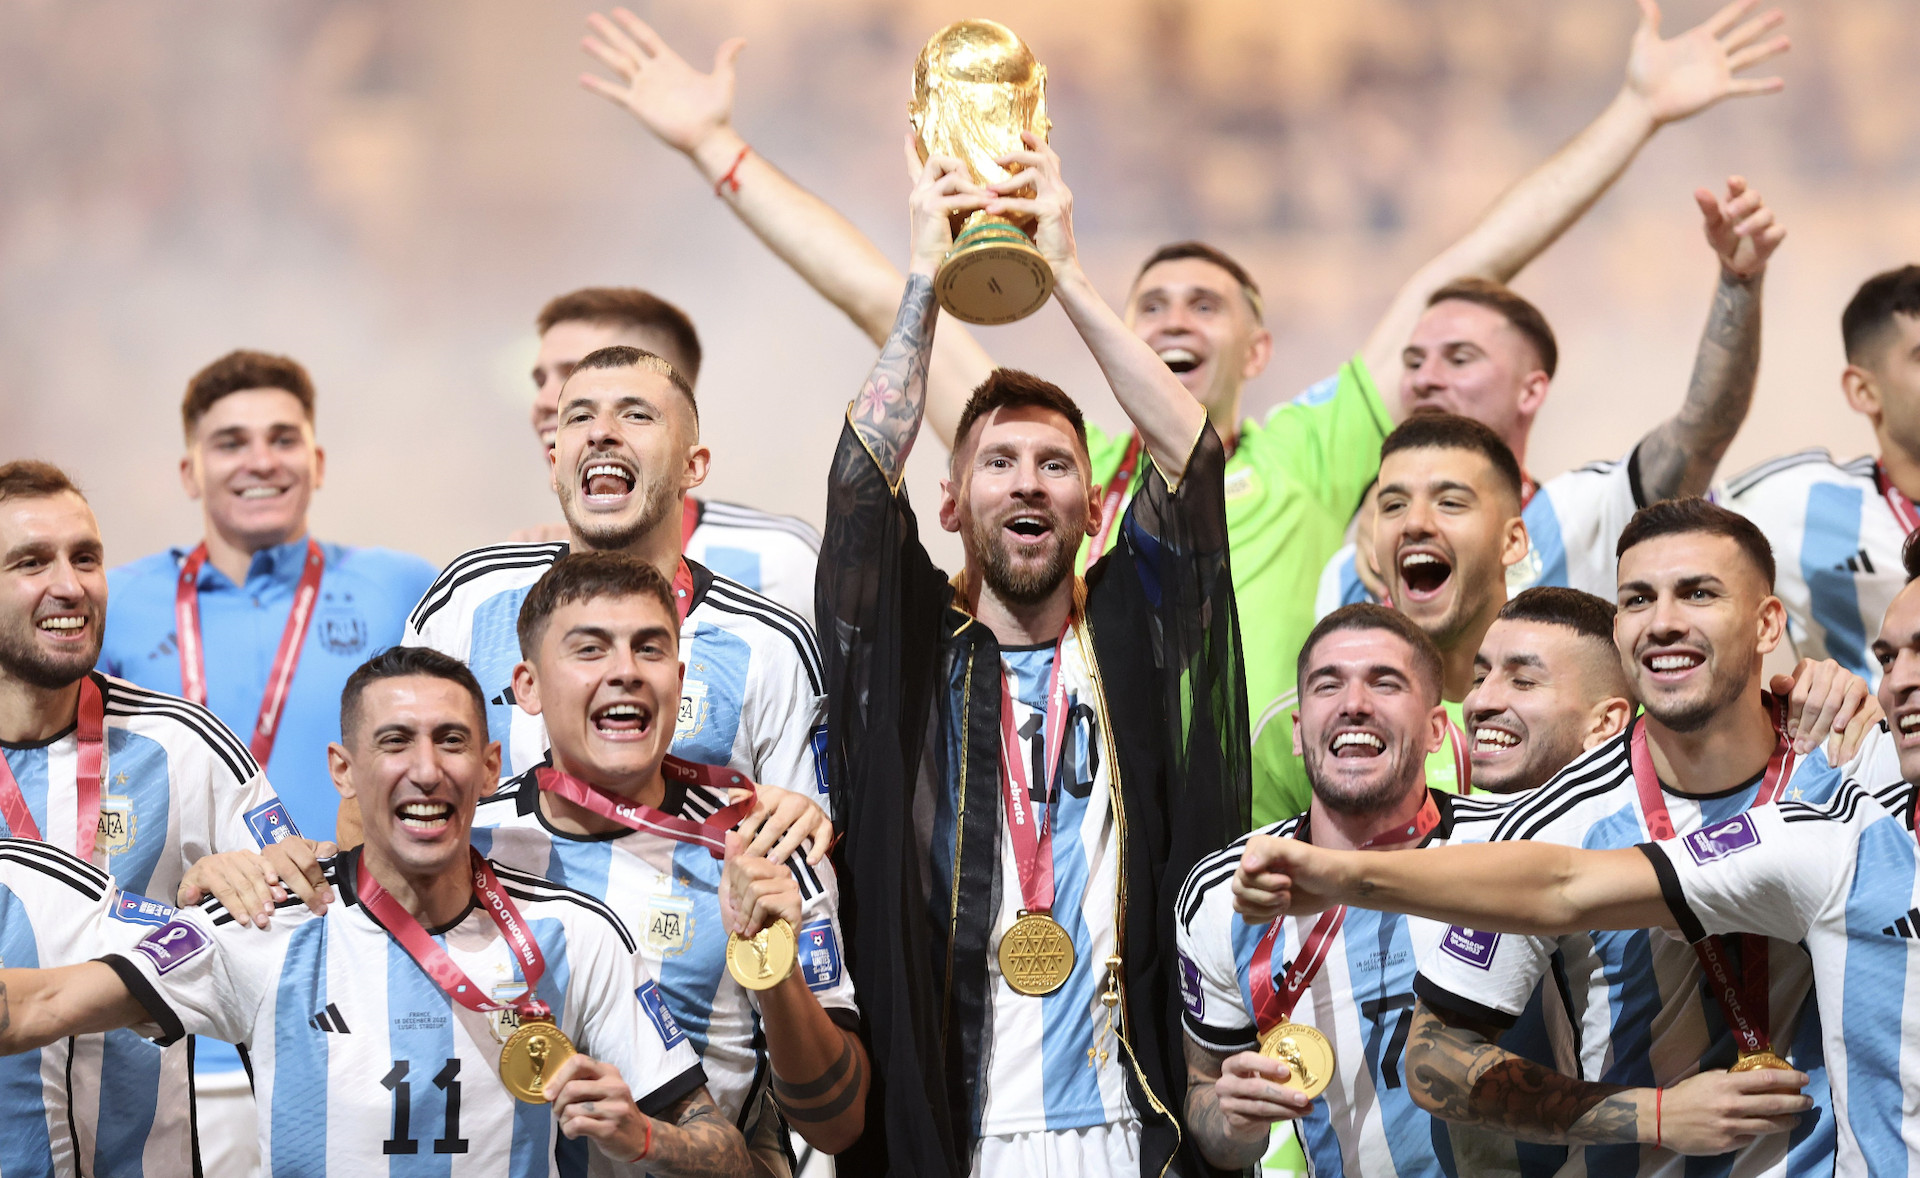 Chung kết World Cup 2022: Đây là trận đấu quyết định của giải World Cup 2022 - một trong những trận đấu đáng mong đợi nhất trong lịch sử bóng đá. Hãy cùng đón xem những hình ảnh đặc biệt của trận chung kết này trong bức tranh này.